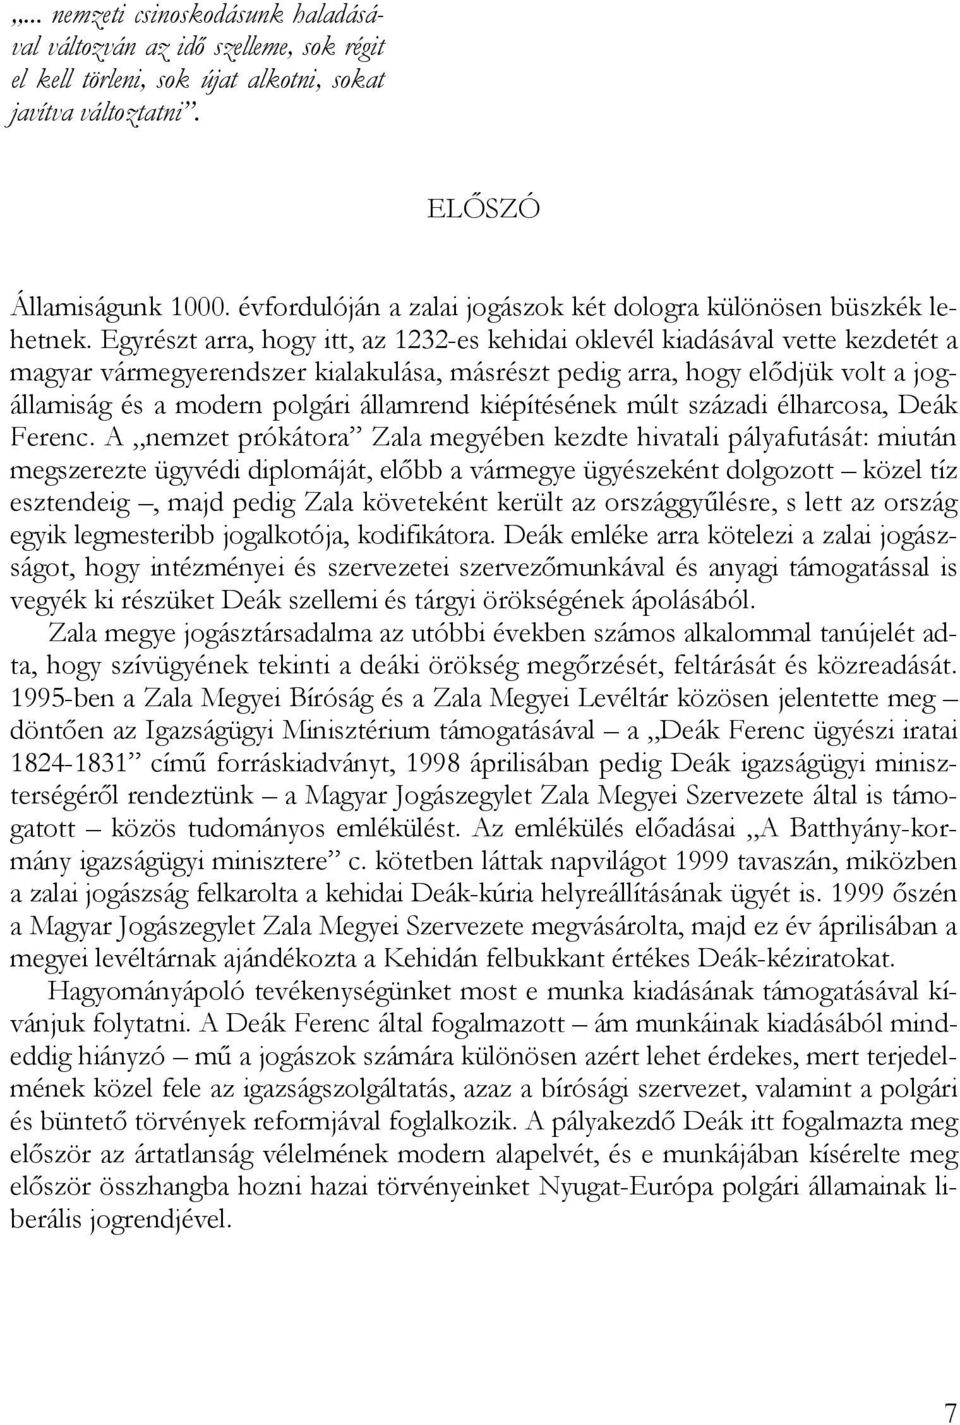 Egyrészt arra, hogy itt, az 1232-es kehidai oklevél kiadásával vette kezdetét a magyar vármegyerendszer kialakulása, másrészt pedig arra, hogy elődjük volt a jogállamiság és a modern polgári